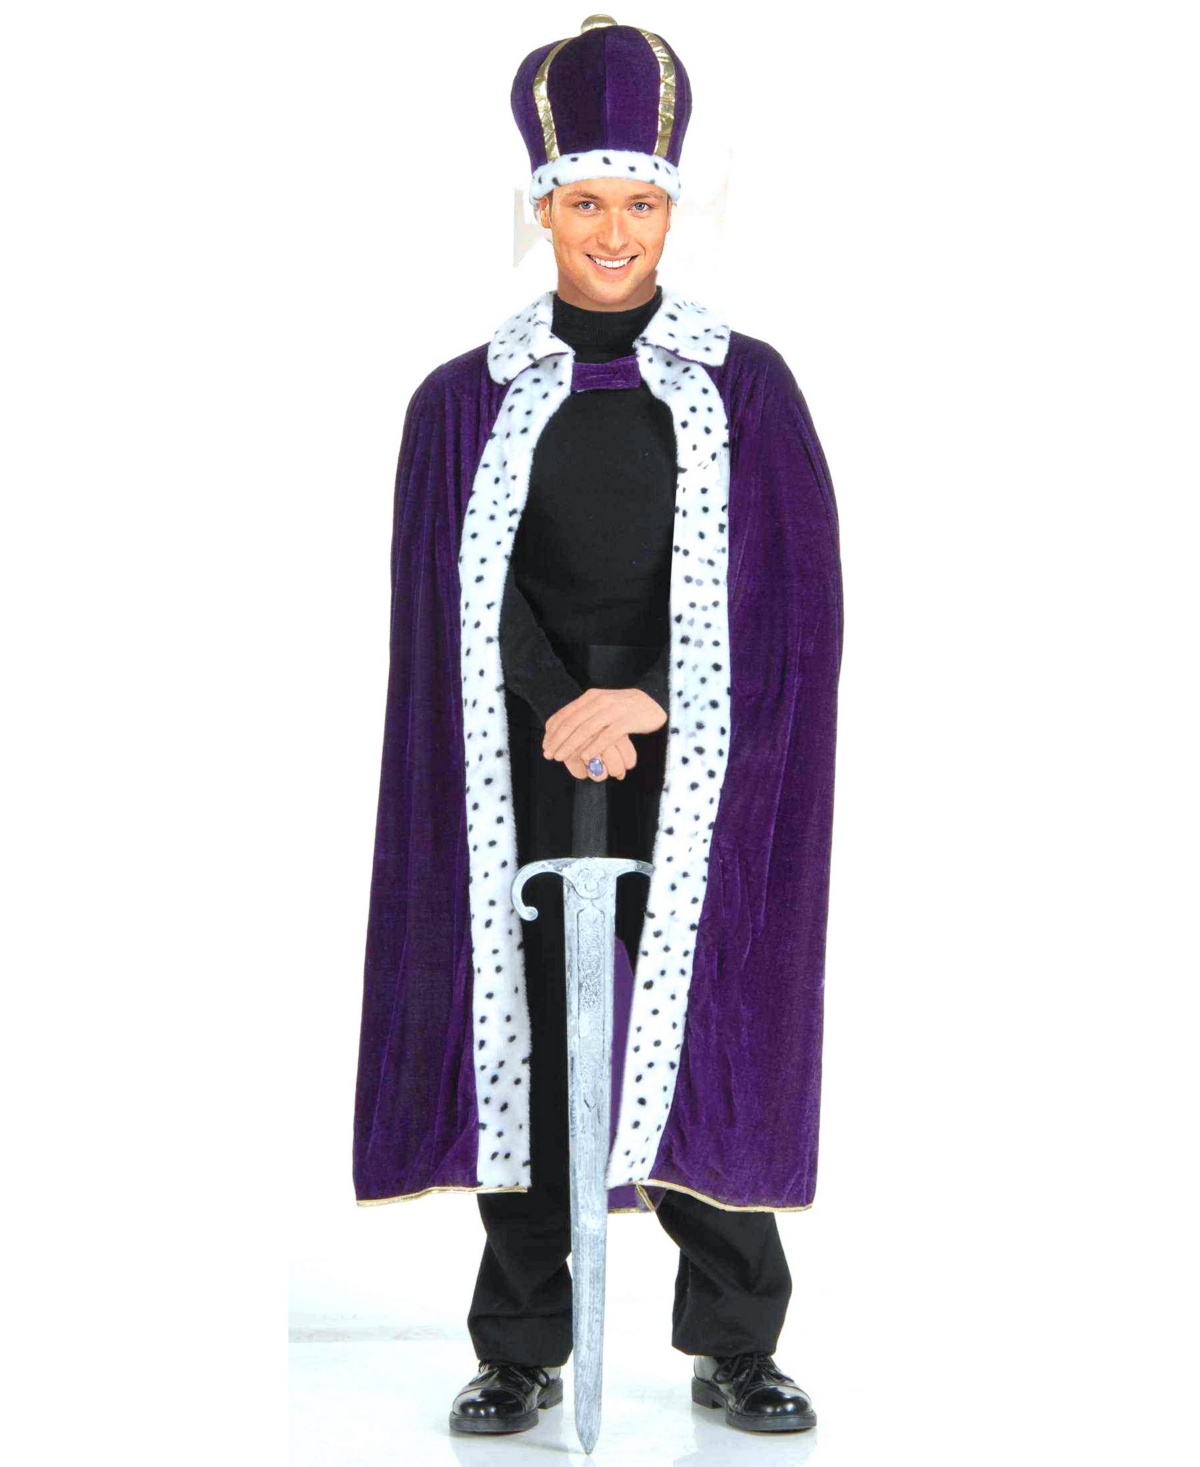 Buy Seasons Men's King Robe and Crown Costume Kit - Purple